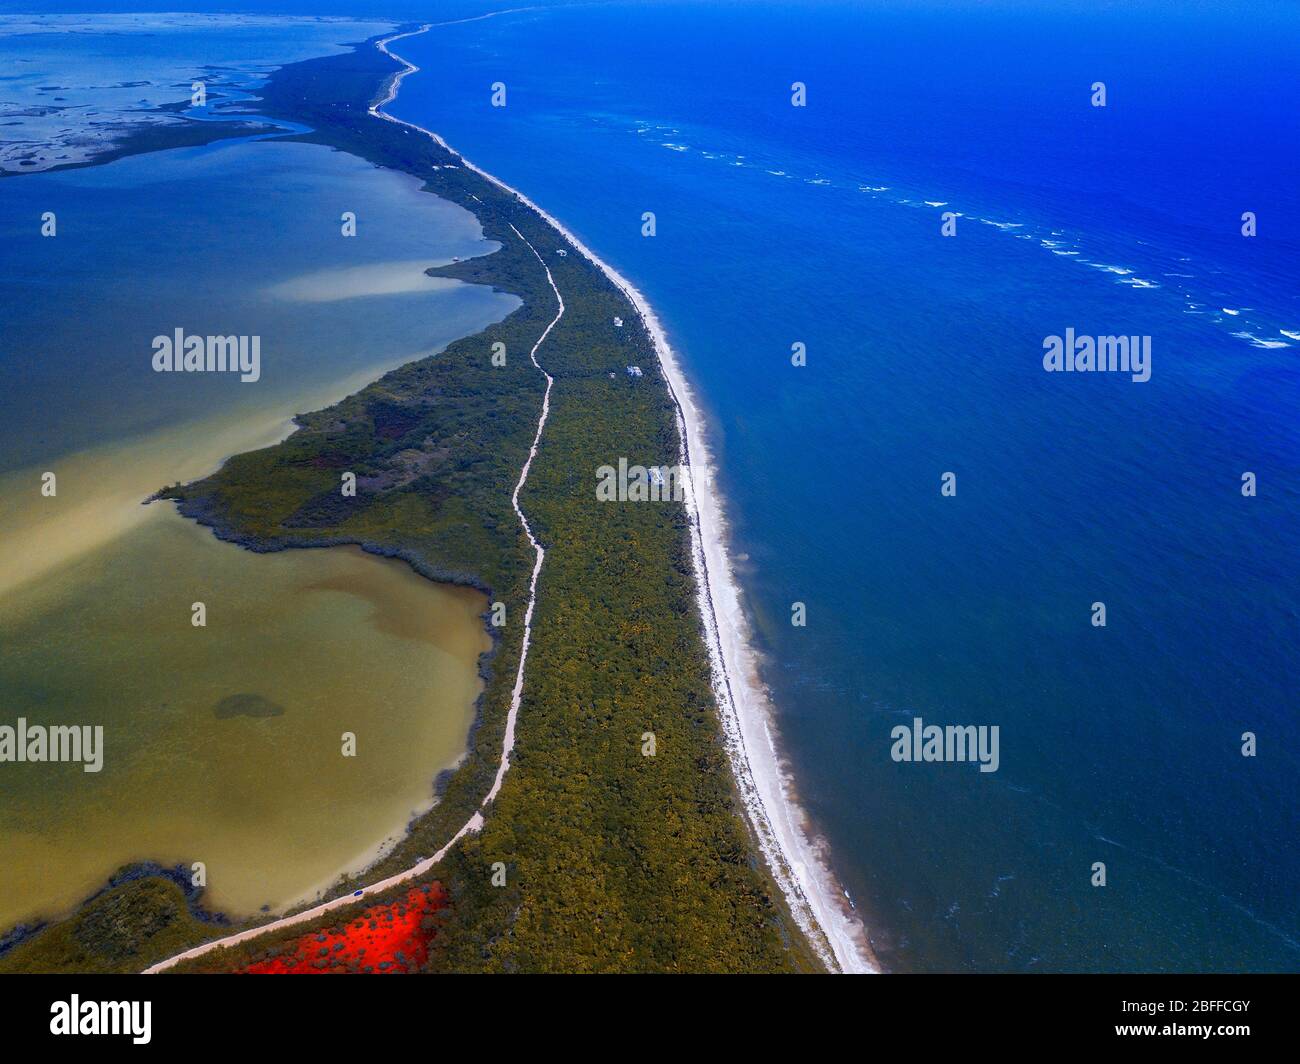 Vue aérienne de la réserve Punta Allen Sian Ka'an, péninsule du Yucatan, Mexique. Lagon rouge près du pont Boca Paila. Dans la langue des peuples mayas qui Banque D'Images